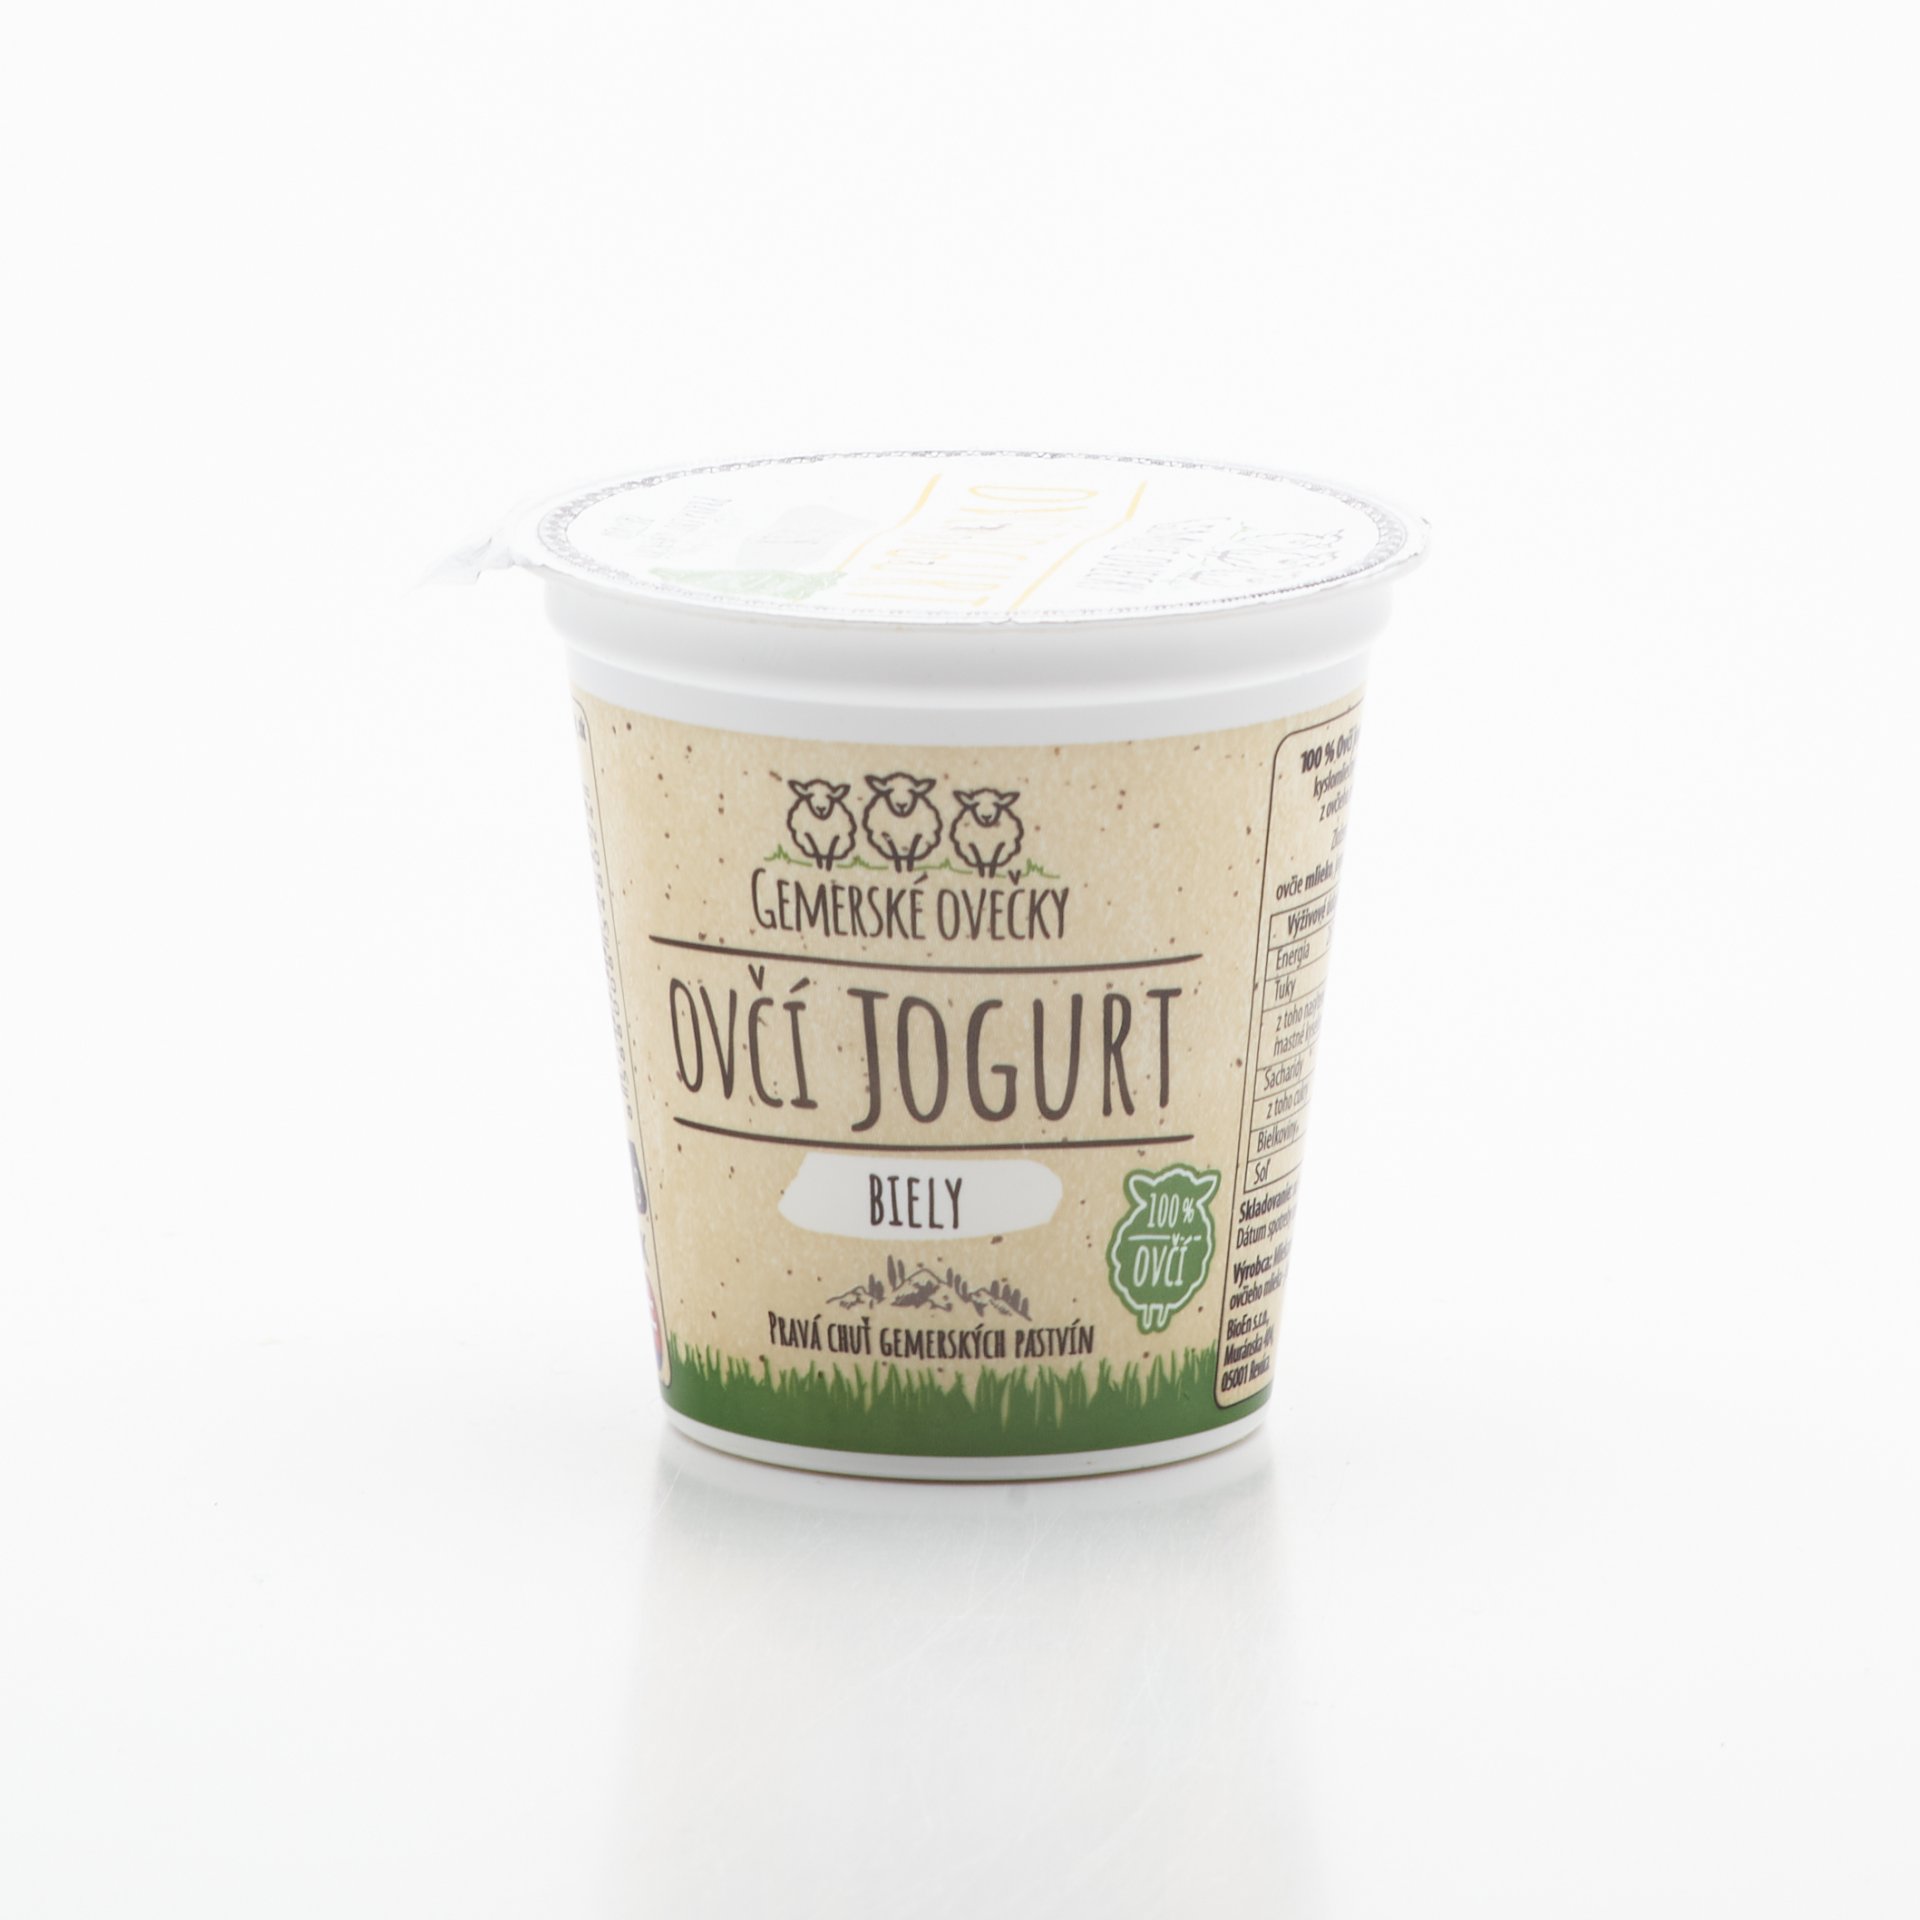 Ovčí jogurt biely 150g